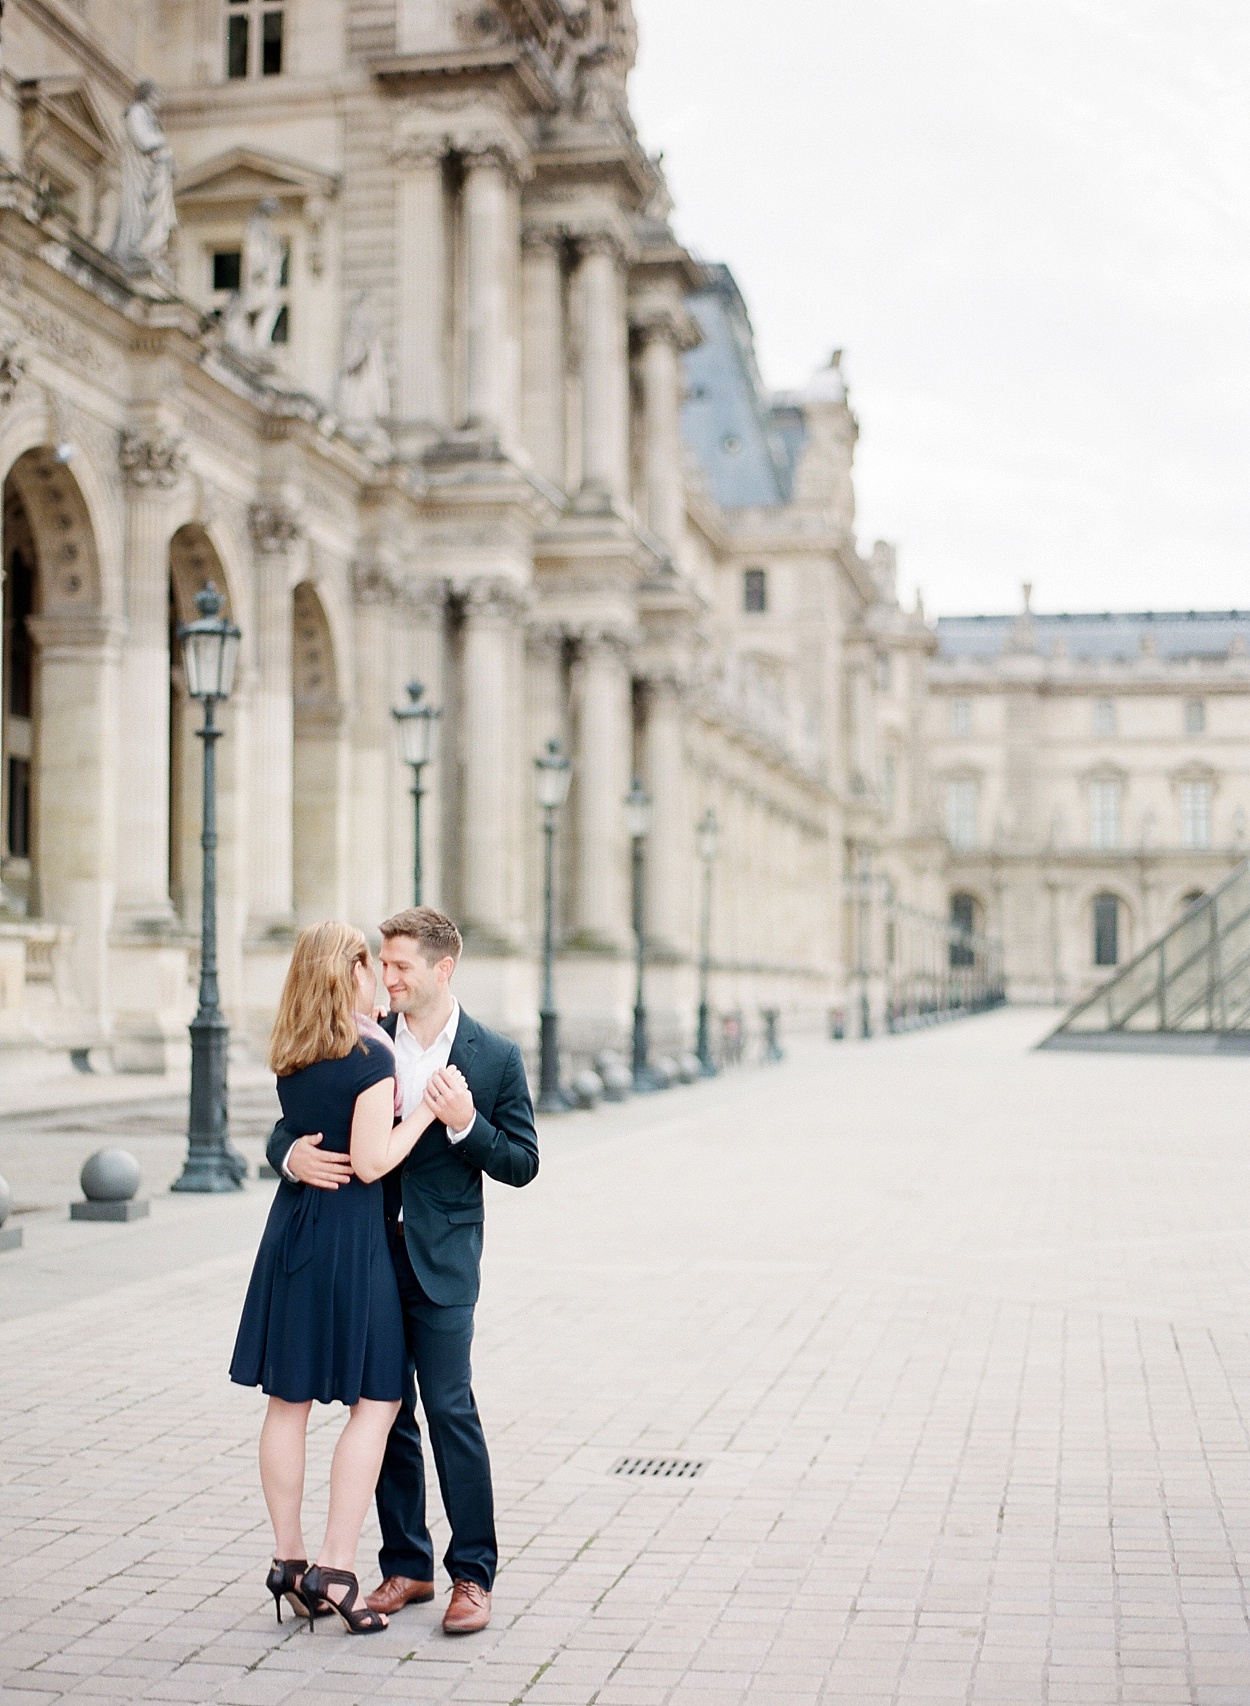 Paris, France anniversary photos | Musée du Louvre | Abby Grace Photography